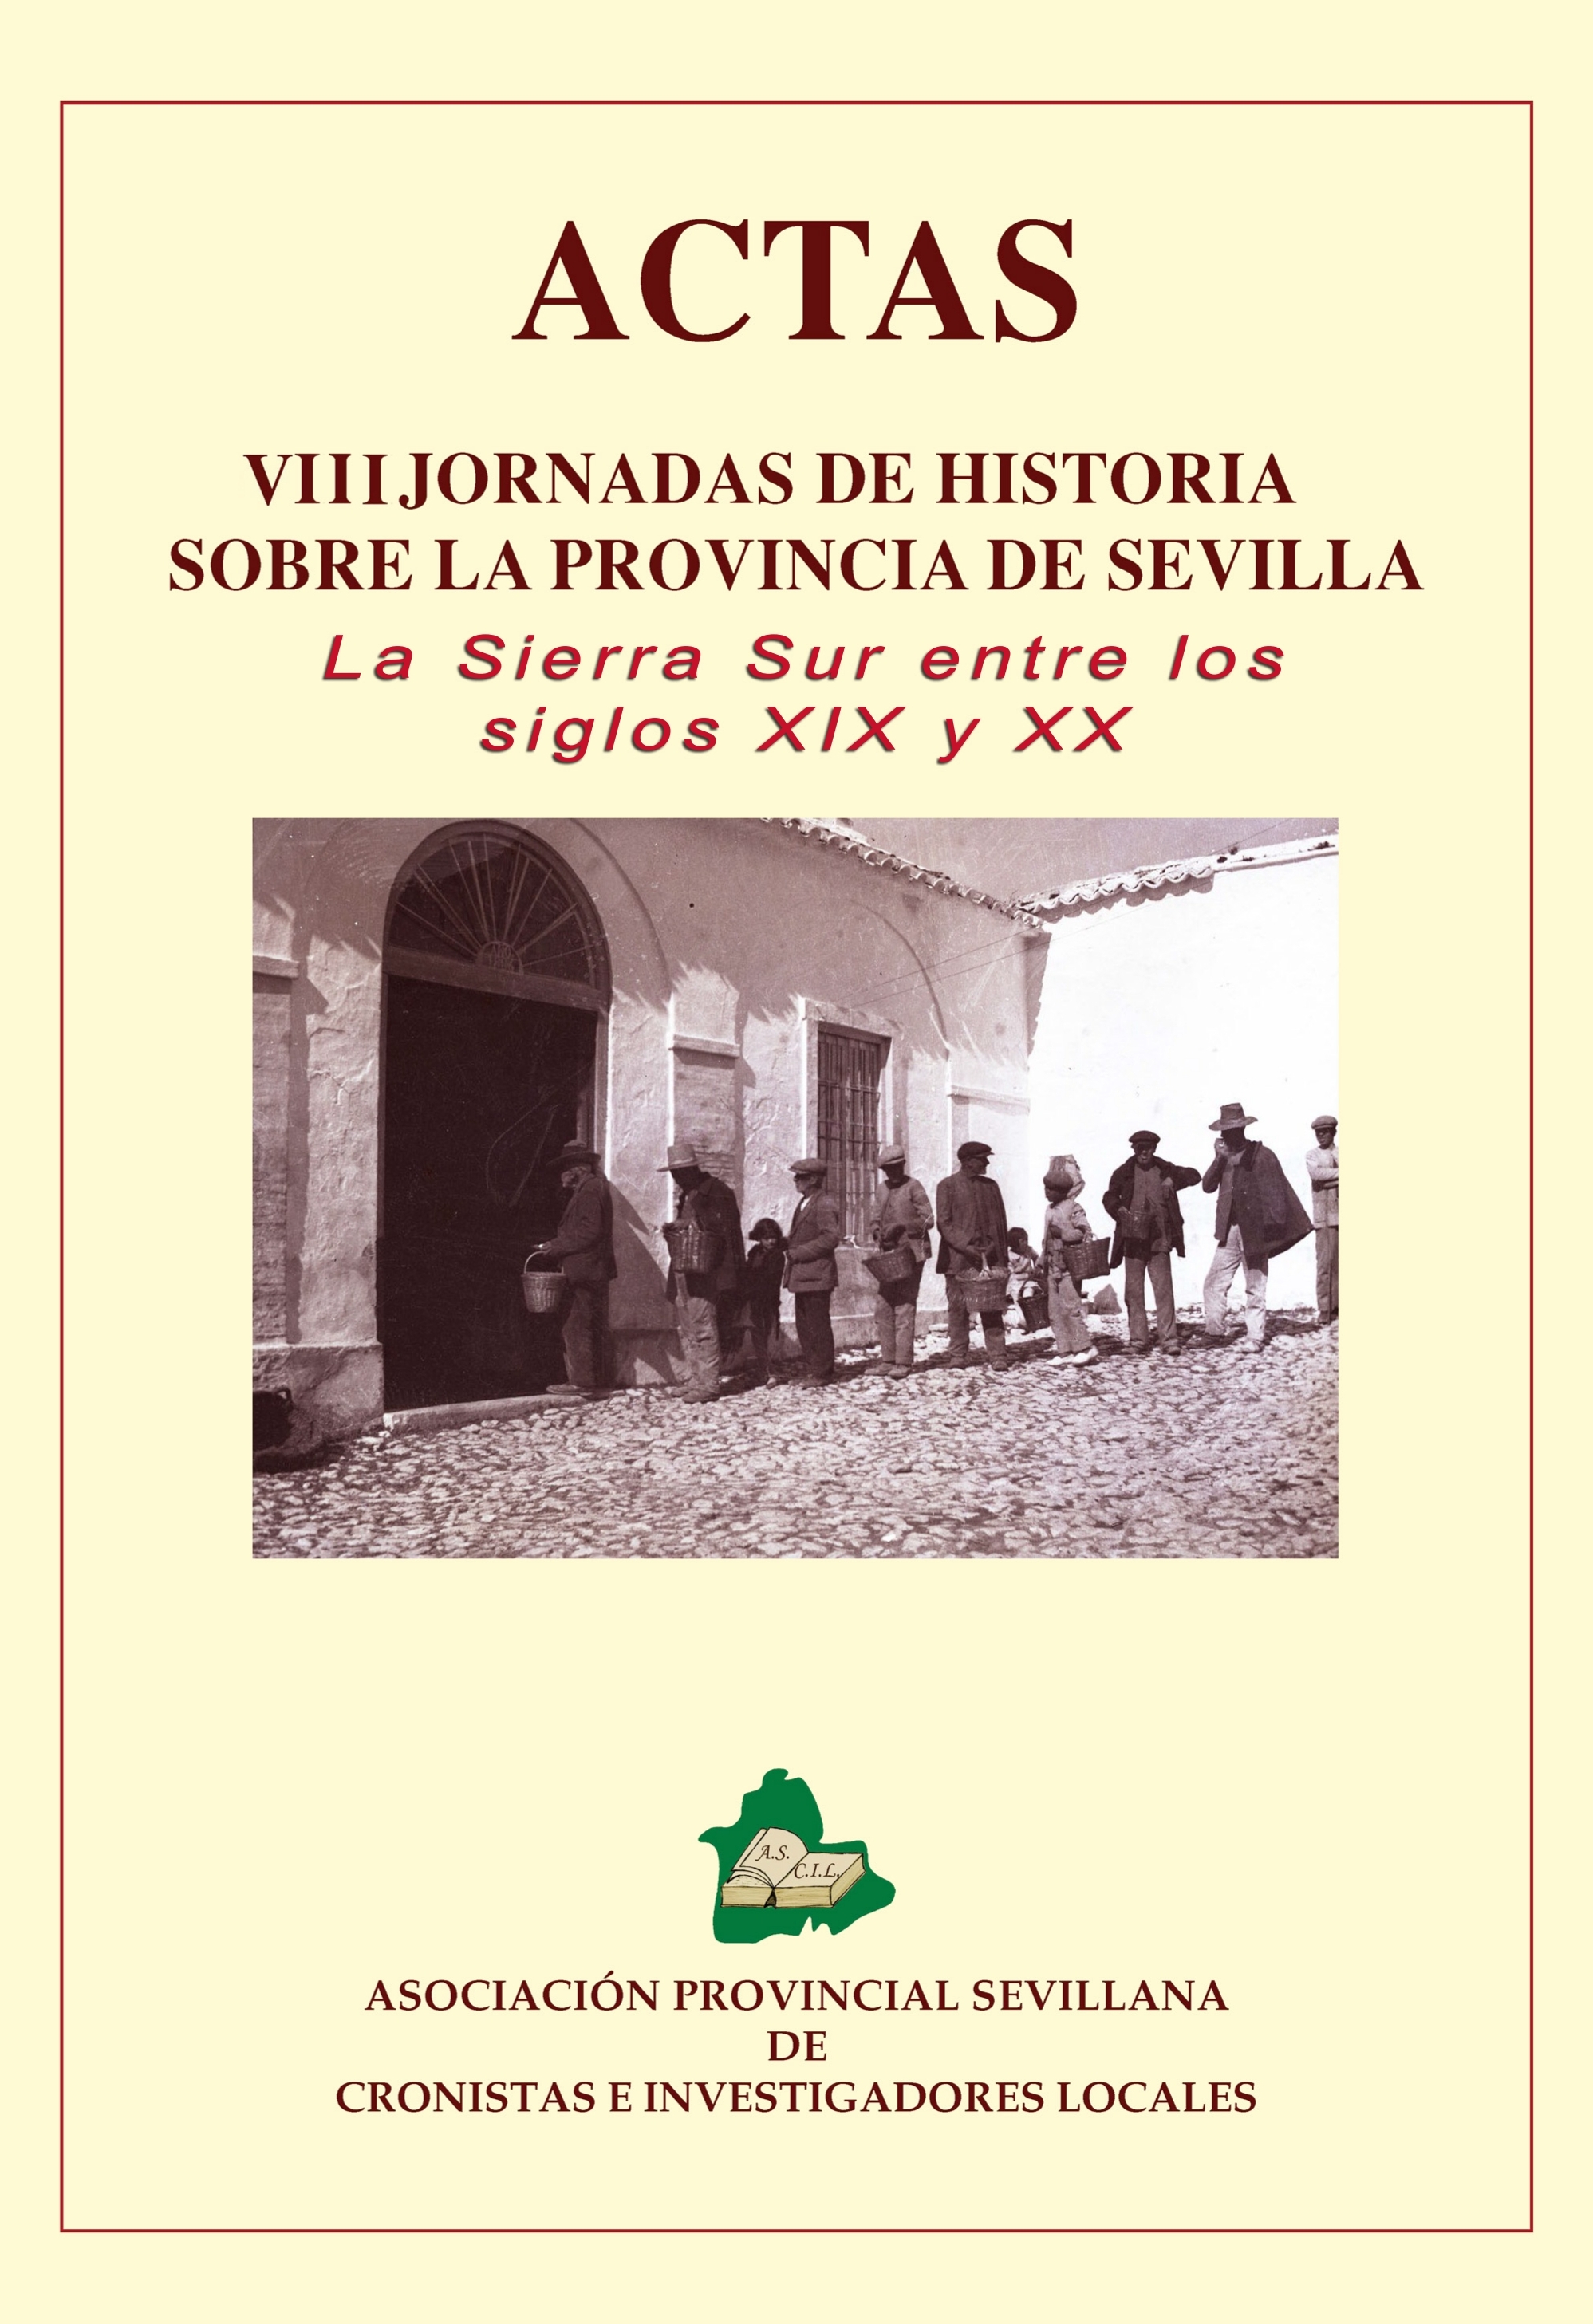 Imagen de portada del libro La Sierra Sur entre los siglos XIX y XX